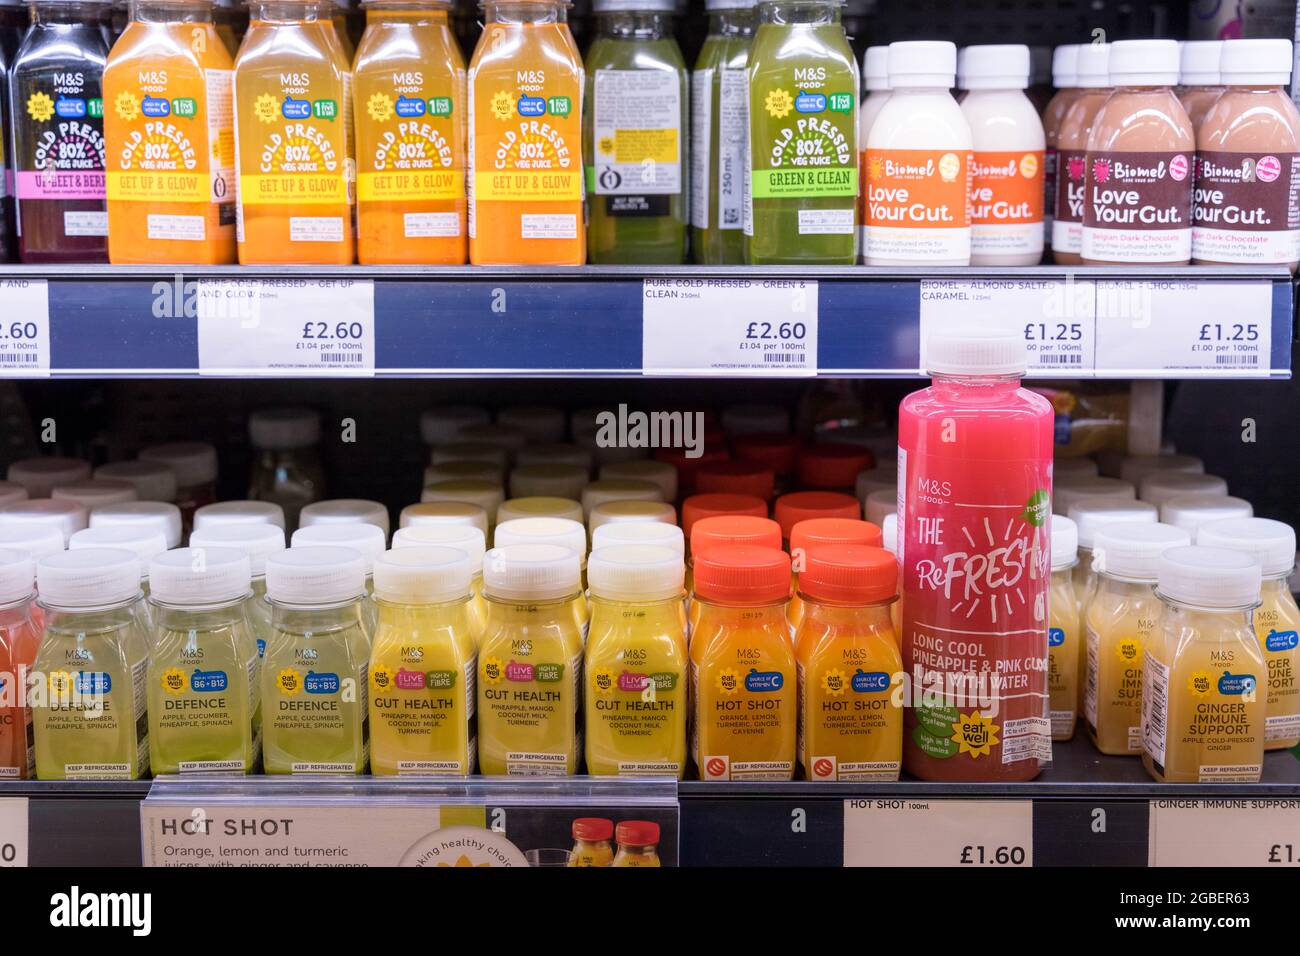 Minibotella de zumo de fruta fresca de inyección caliente a la venta en Marks and Spencer's London, Inglaterra Foto de stock